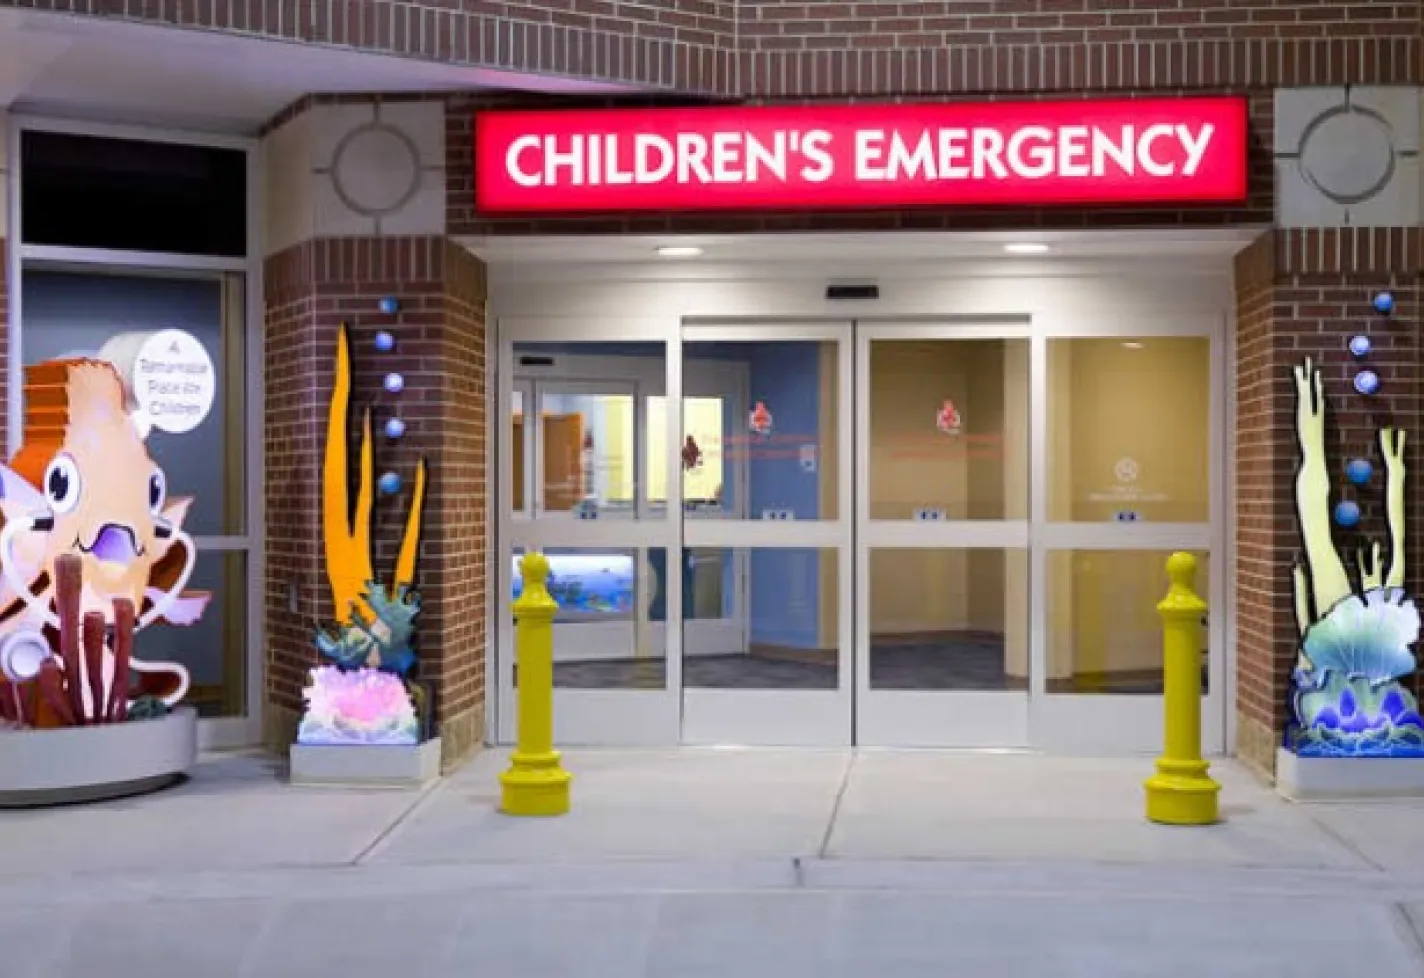 Novant Health Presbyterian Emergency Room Entrance